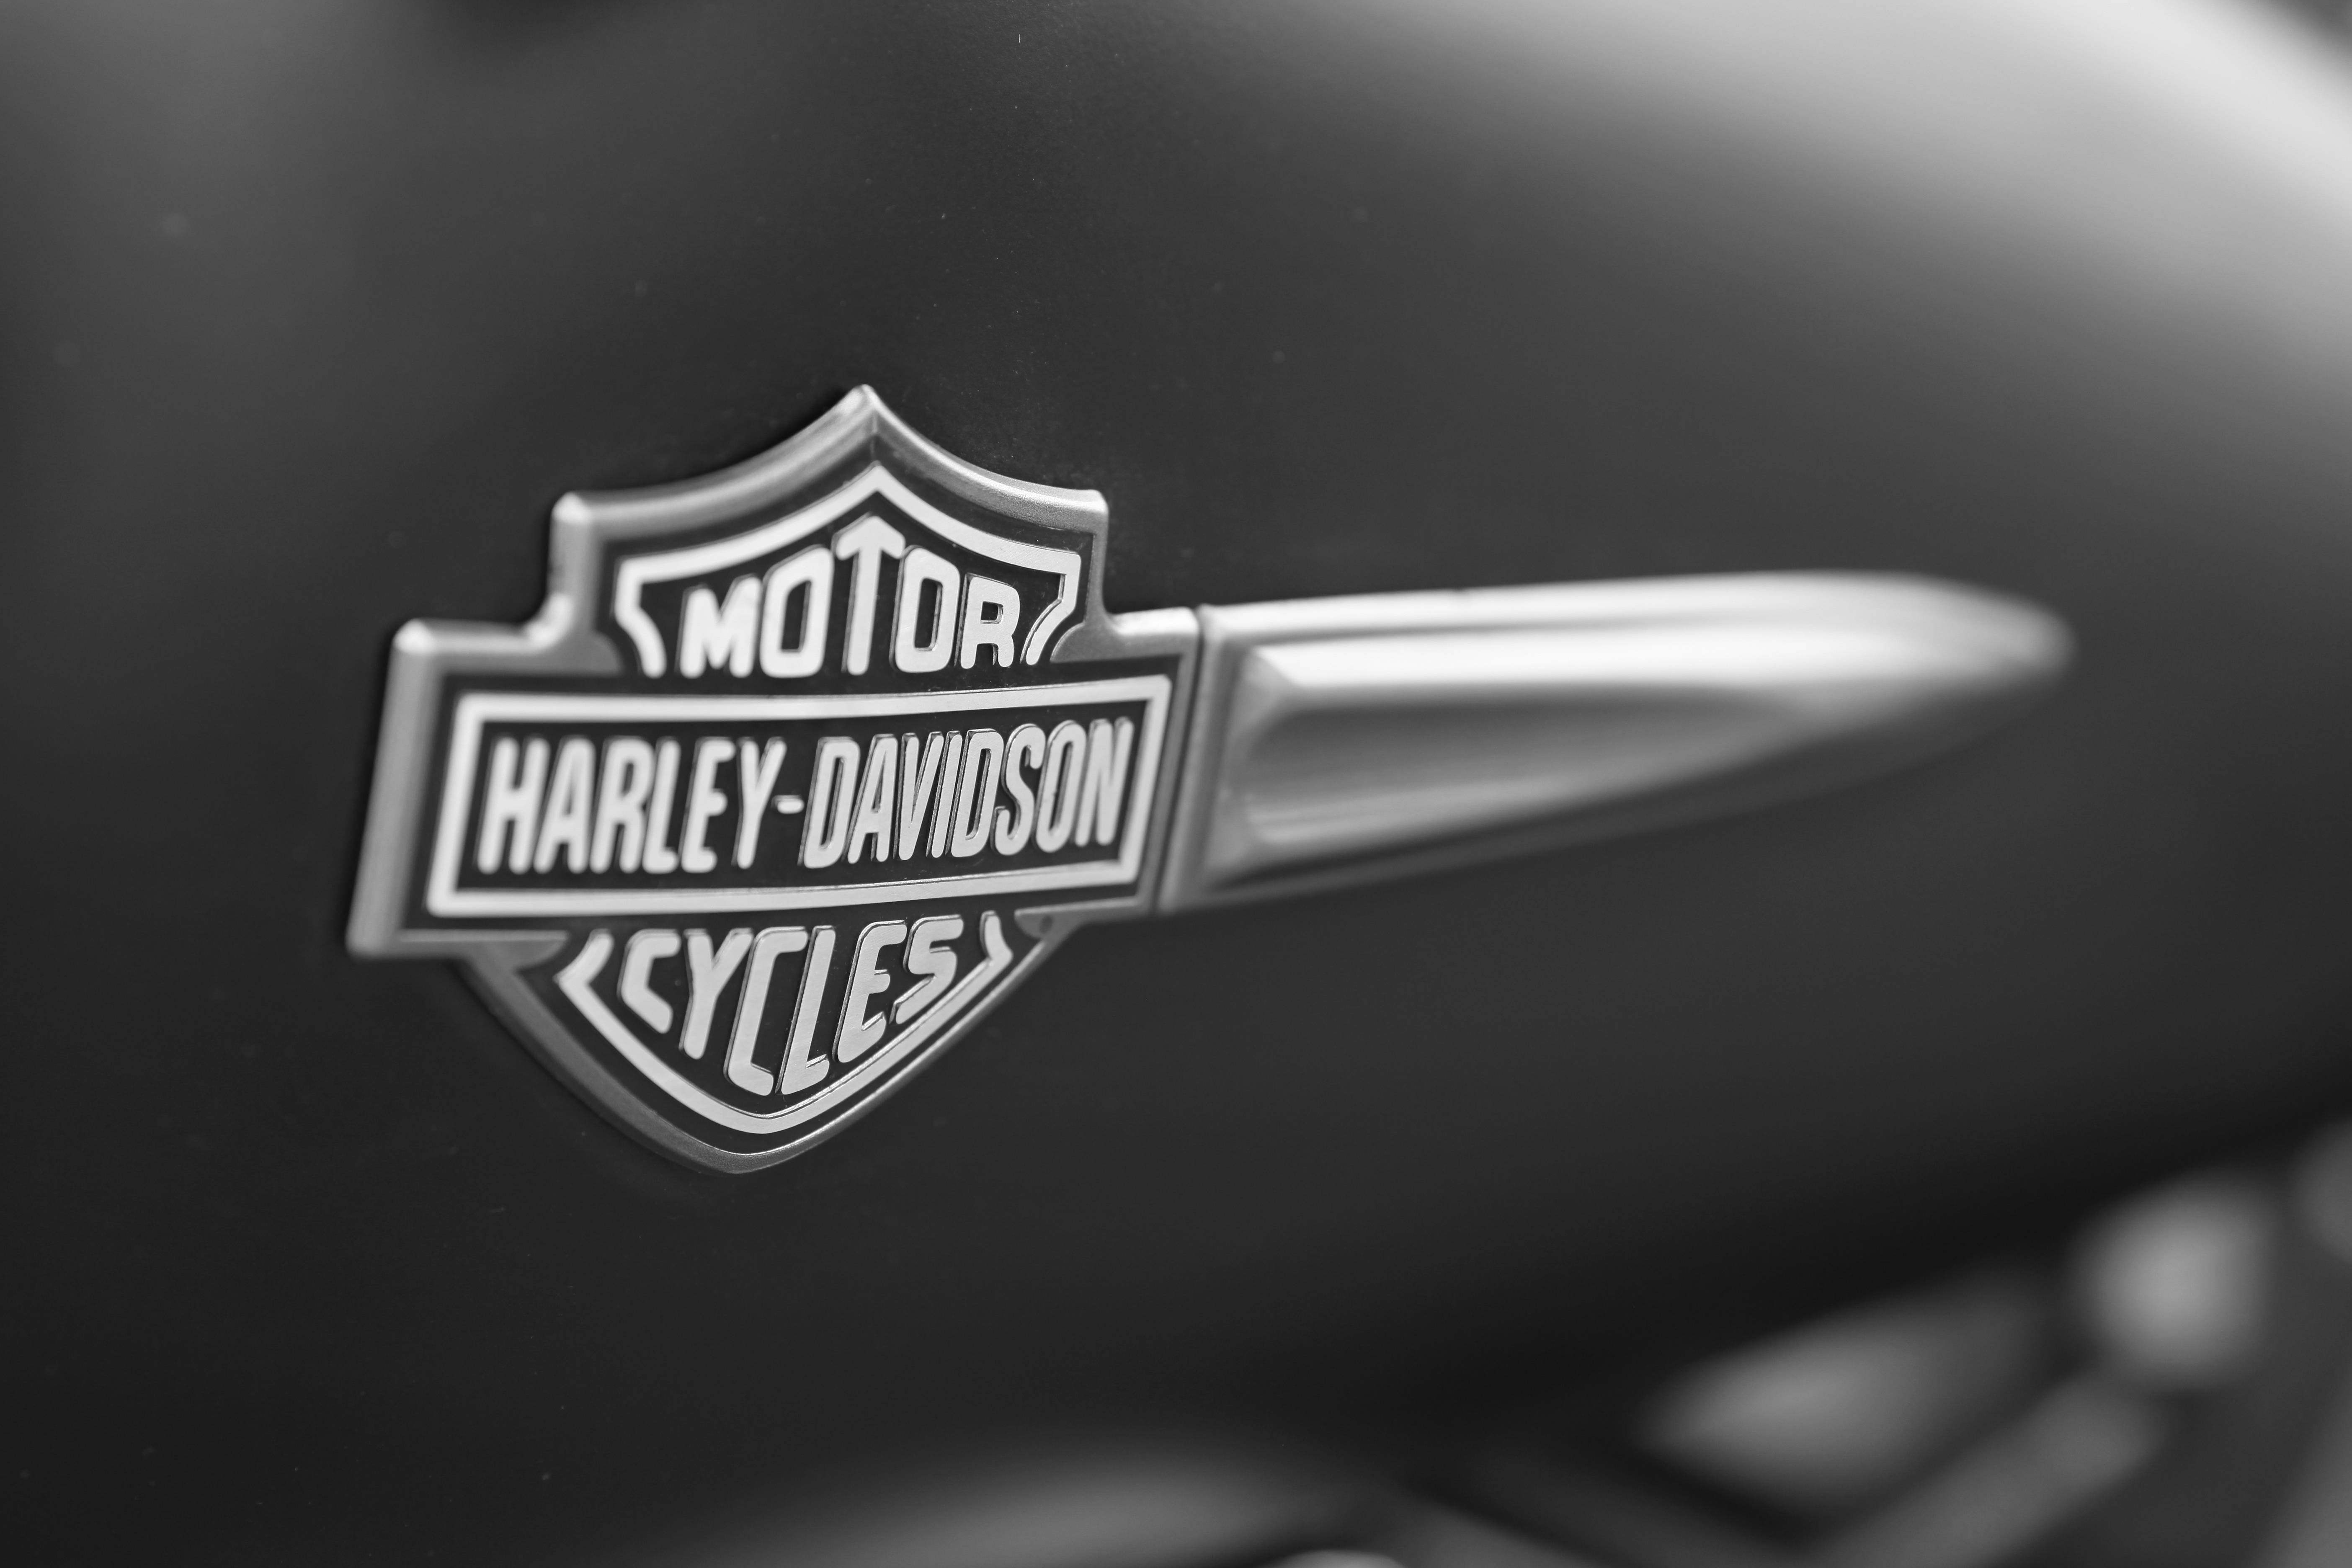 Harley Davidson Motor Logo 2013 HD Desktop Backgrounds